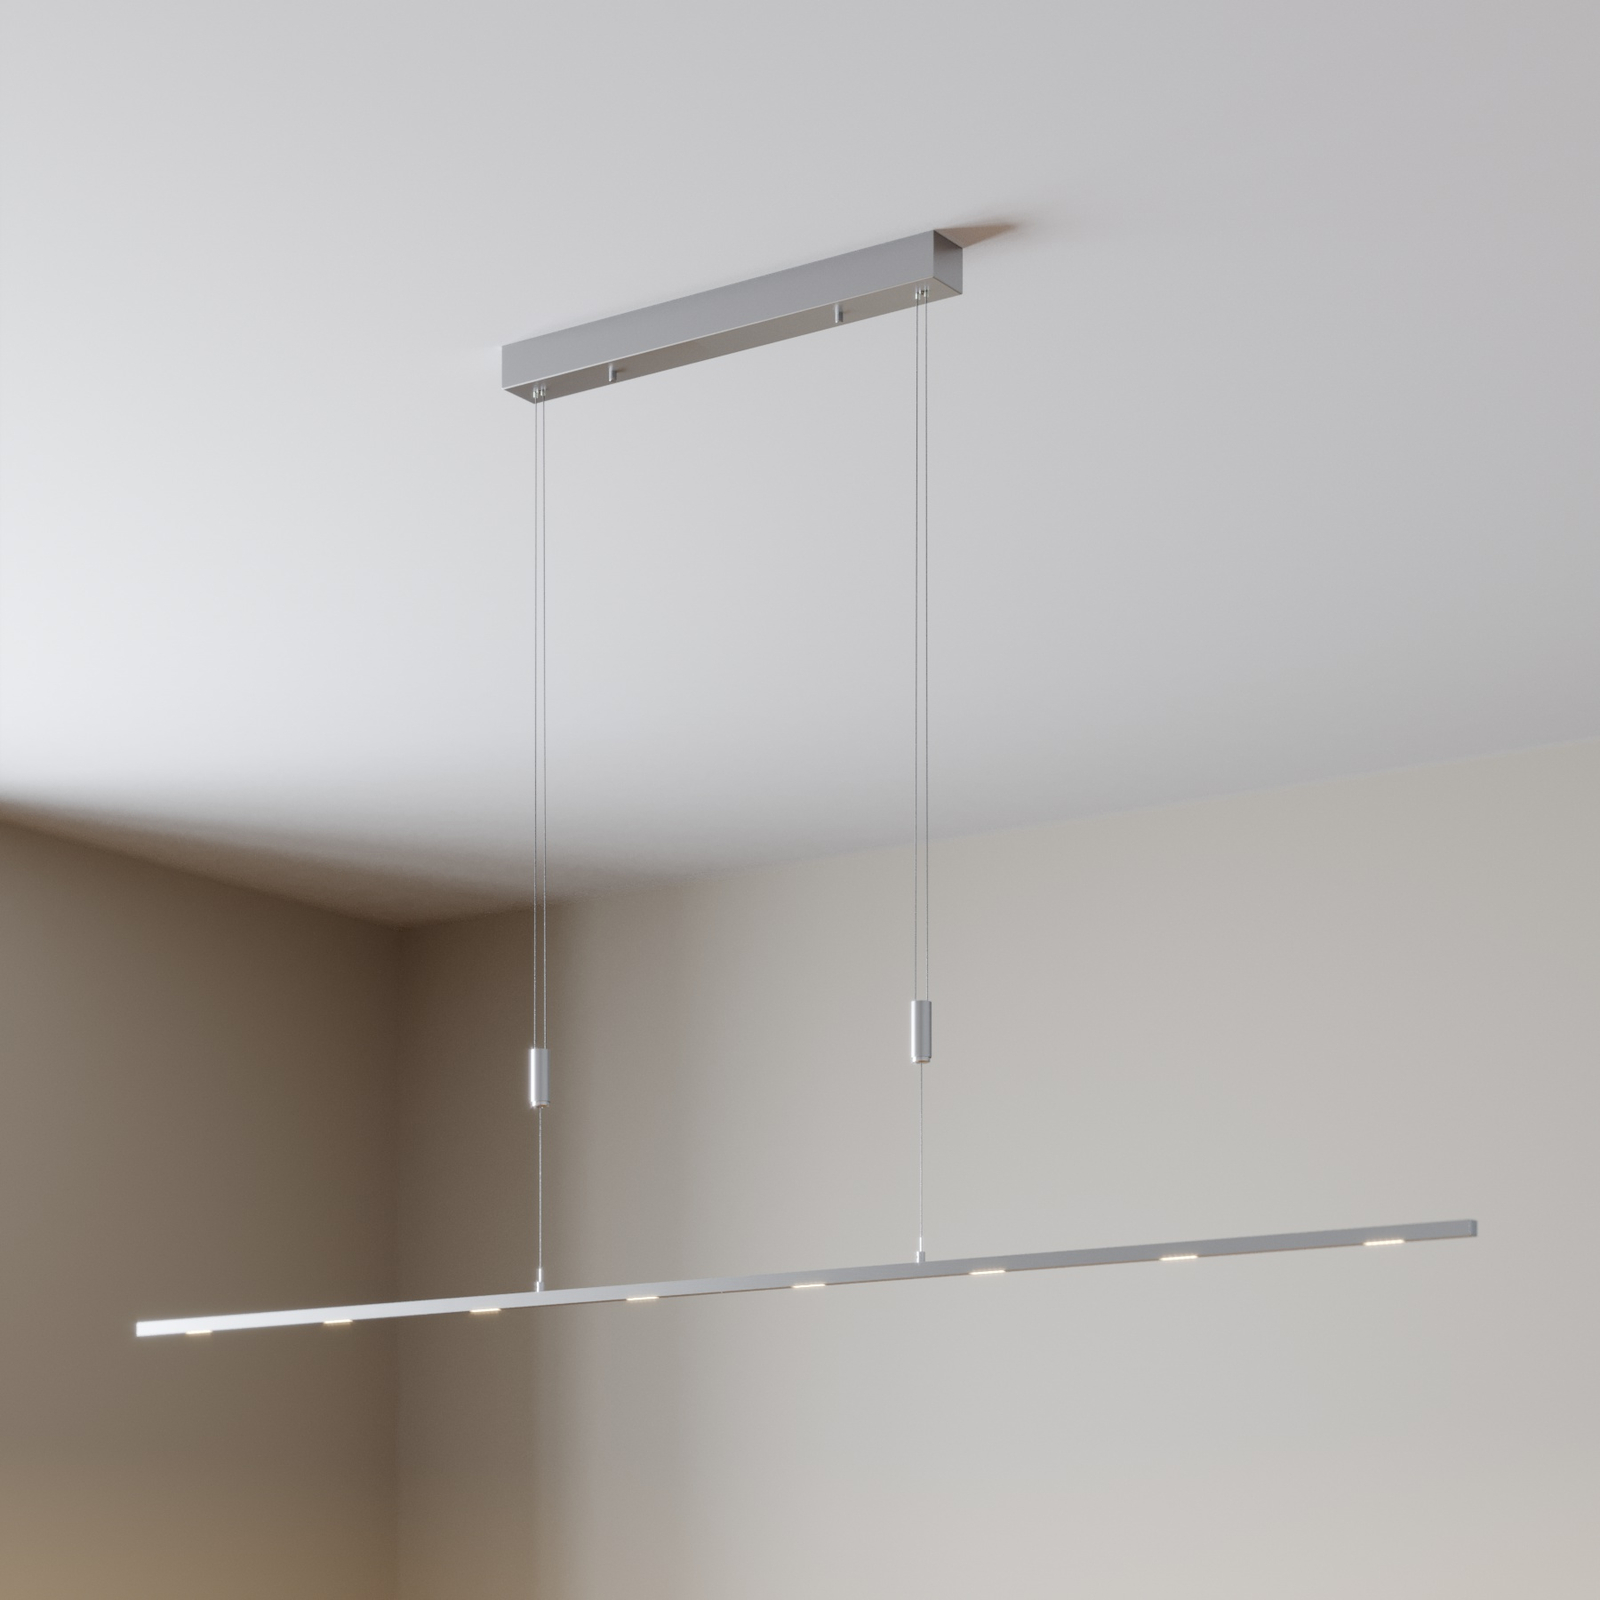 Renaissance terugtrekken voorzichtig LED hanglamp Arnik, dimbaar, 180 cm | Lampen24.nl